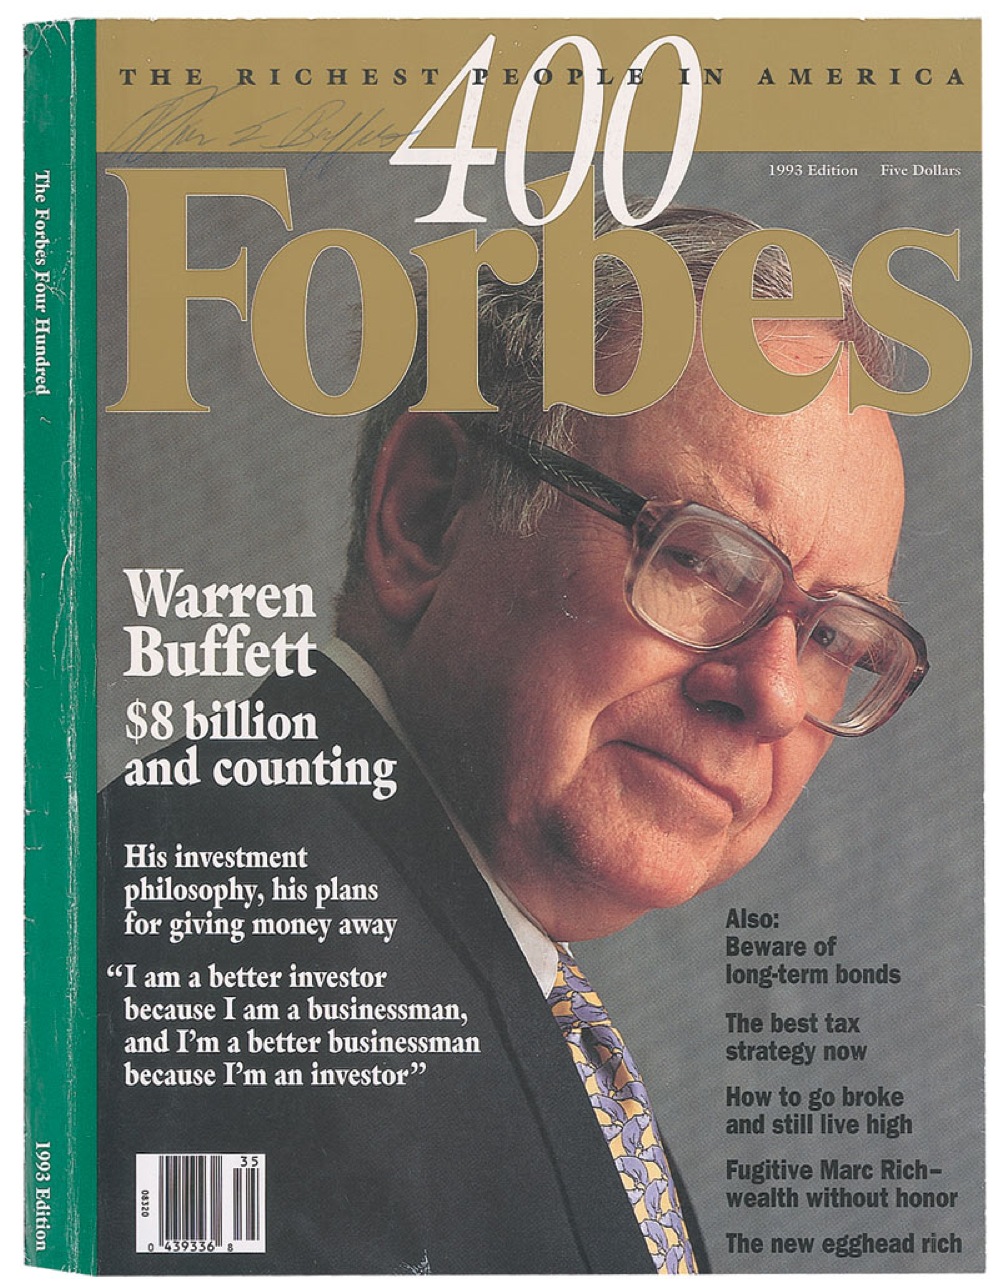 Lot #176 Warren Buffett